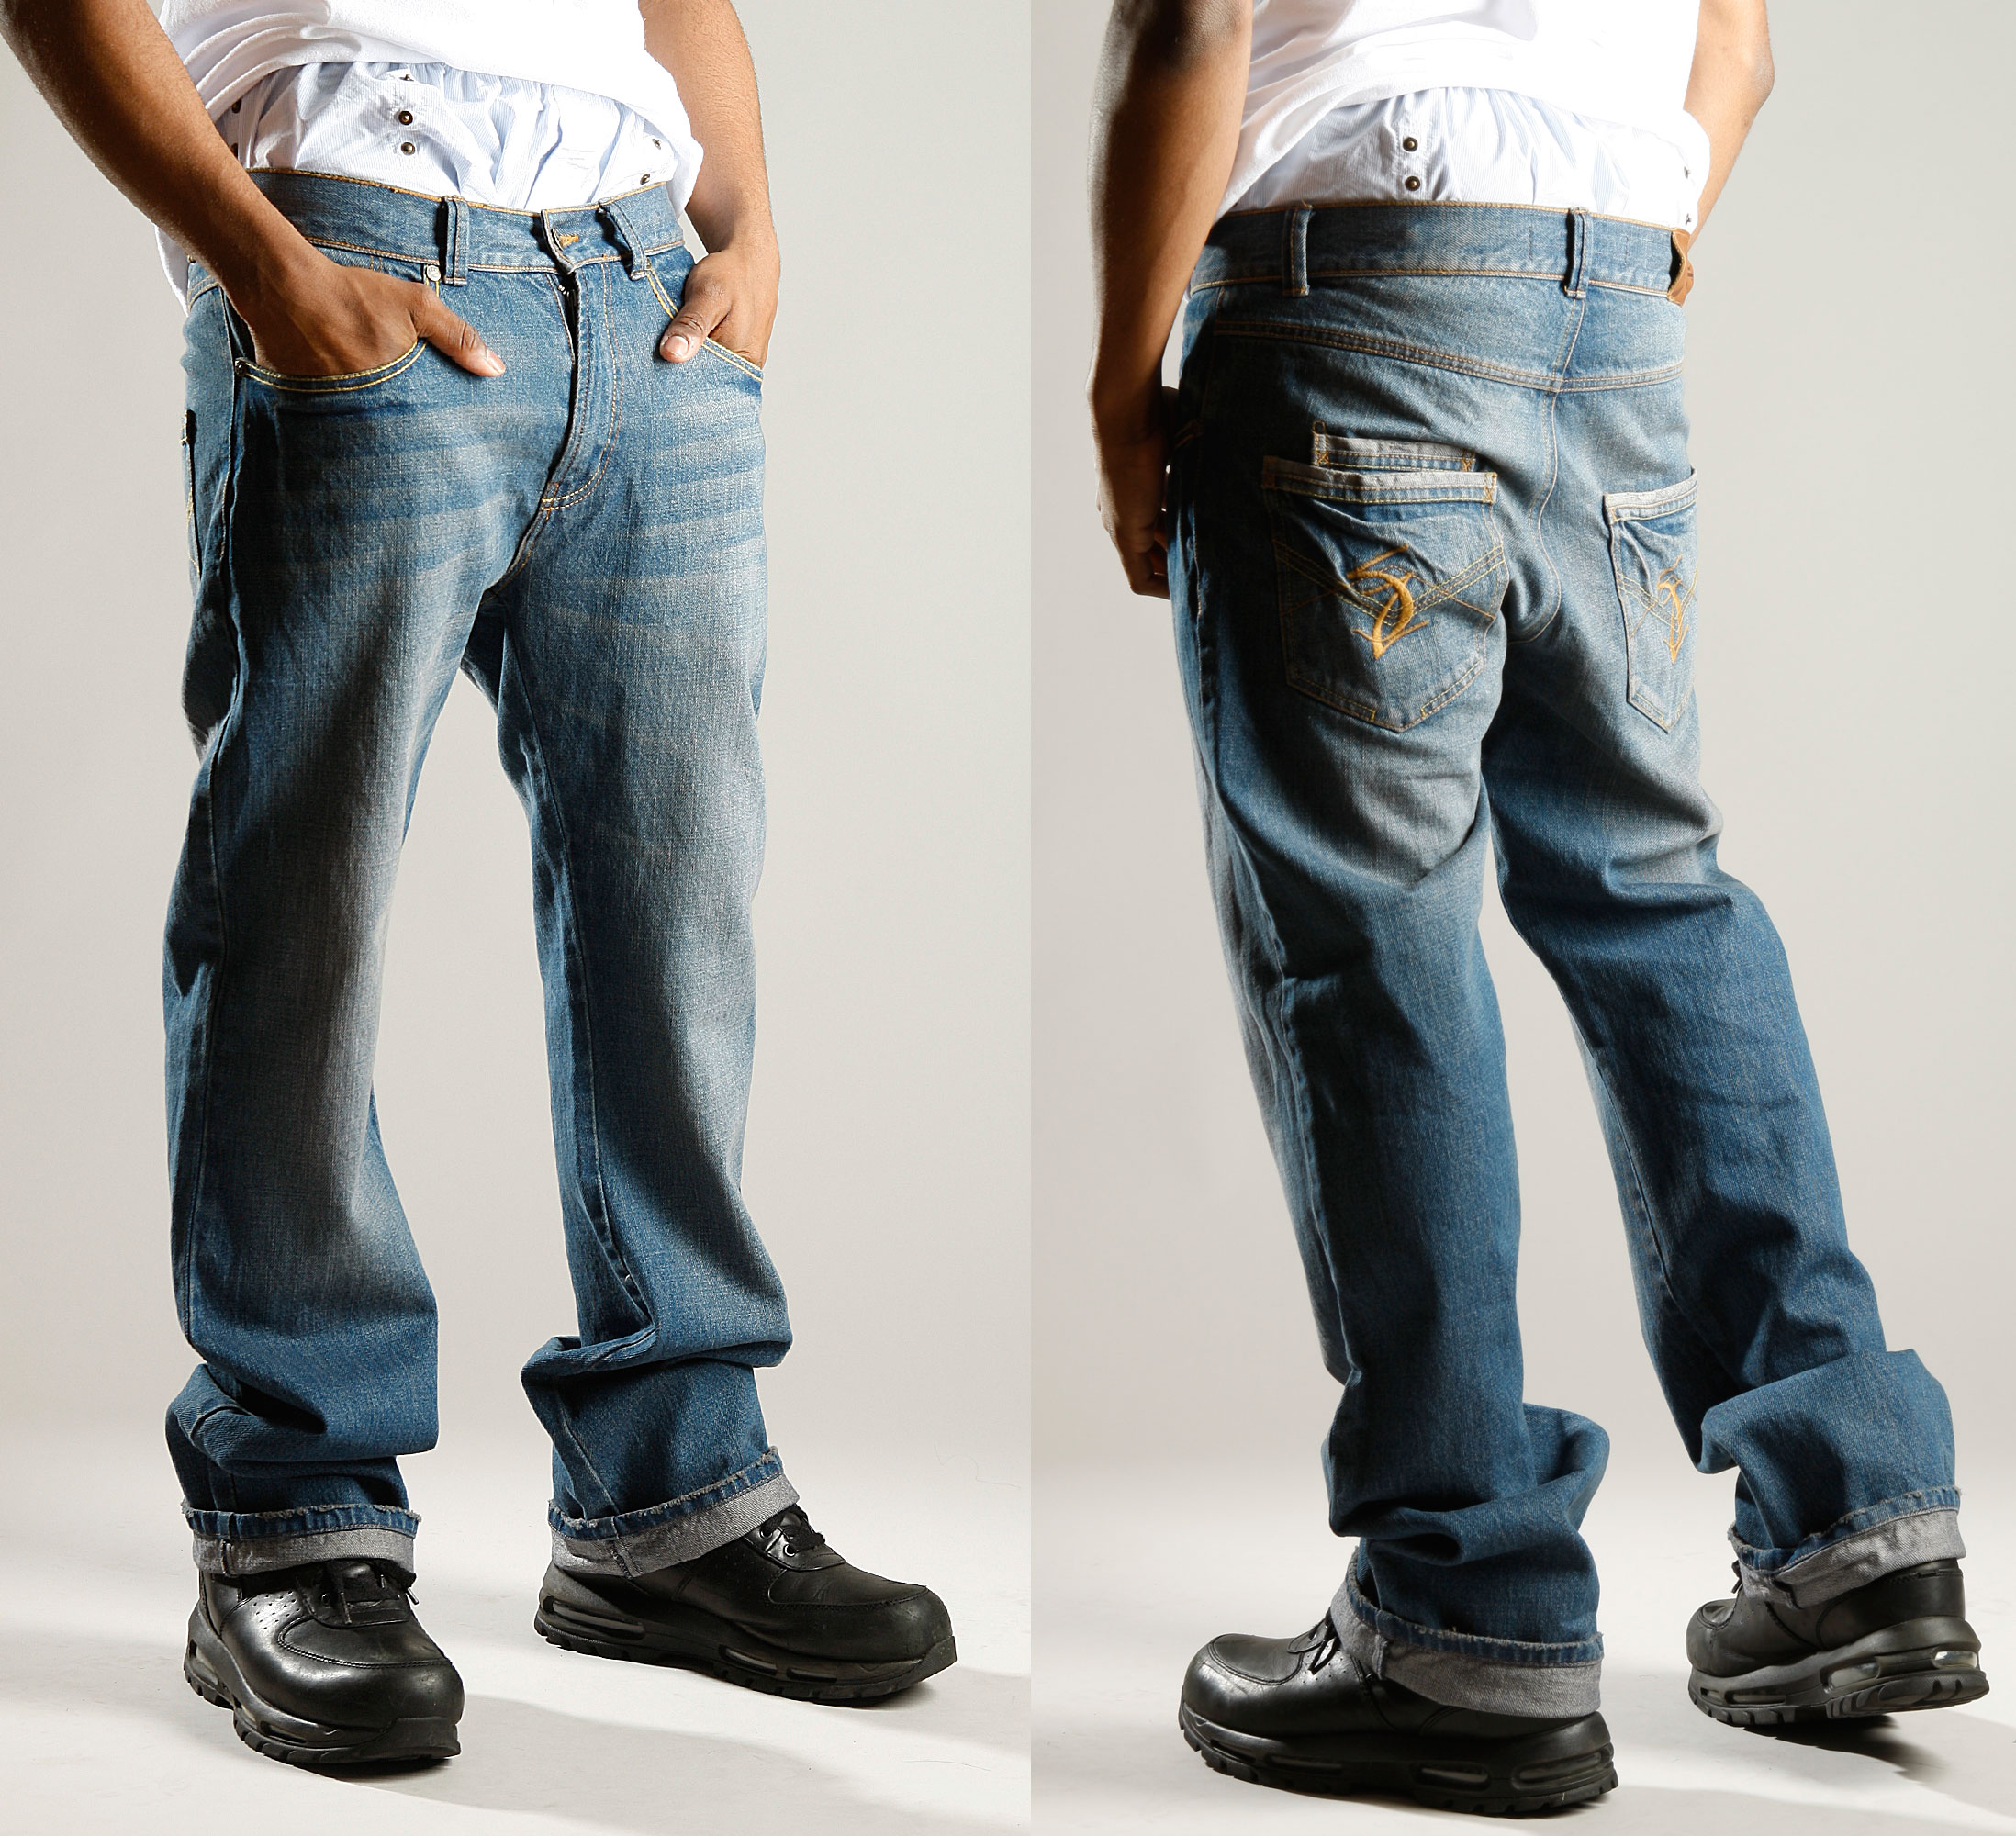 Sagz Jeans, a Built-in Boxer Men Saggin' Jeans Line, Officially ...